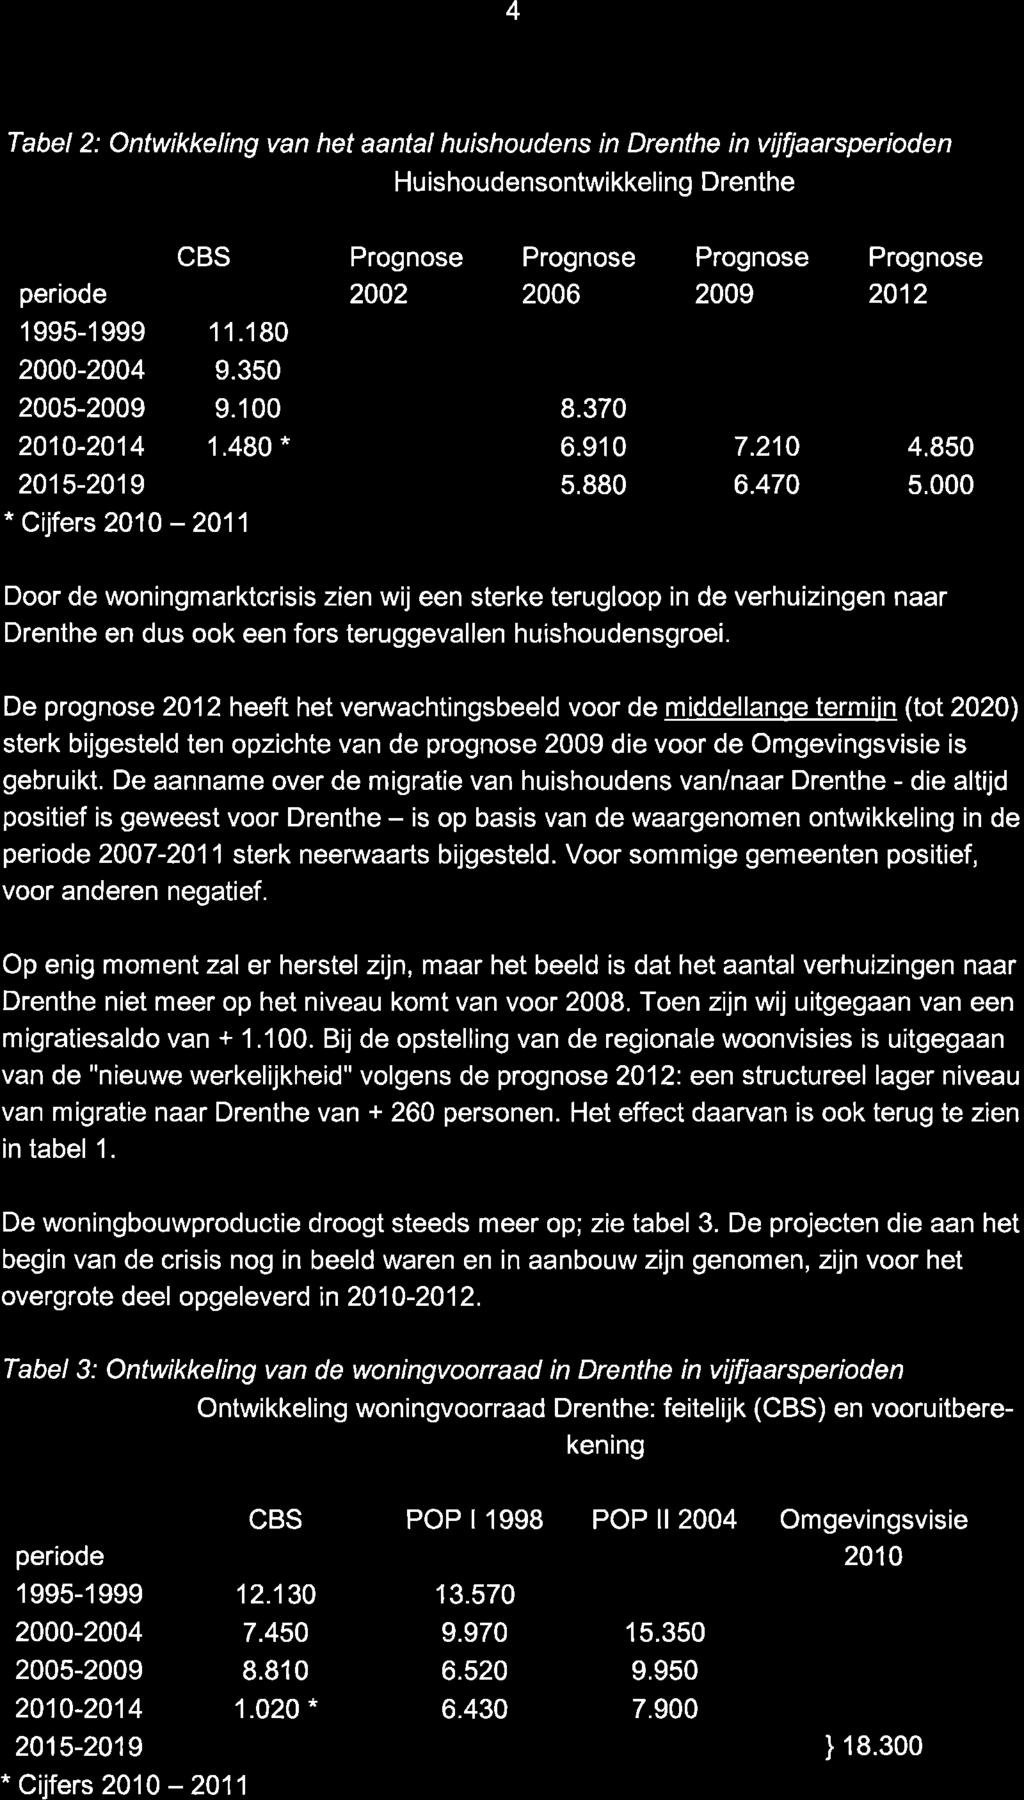 4 Tabel 2: Ontwikkeling van het aantal huishoudens in Drenthe in vijfjaarsperioden Hu ishoudensontwikkeling Drenthe periode CBS 1 995-1 999 1 1.180 2000-2004 9.350 2005-9.100 8.370 2010-2014 1.